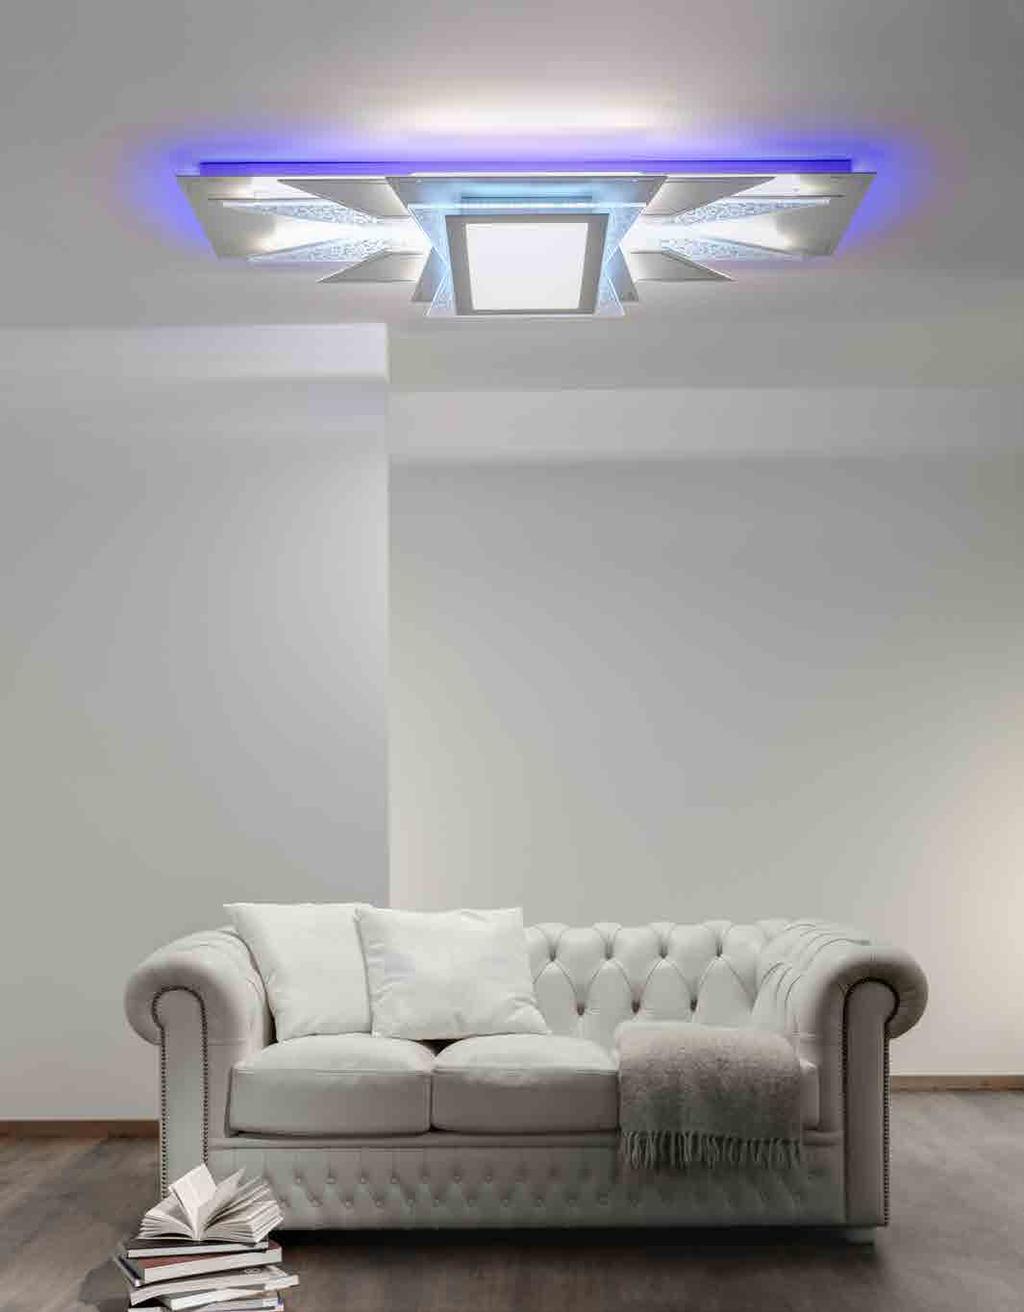 KORA Lampada a LED da soffitto a diffusione. Corpo in alluminio verniciato con possibilità elementi di diversi colori secondo palette RAL. Illuminazione diretta nella parte inferiore e aloni estetici.